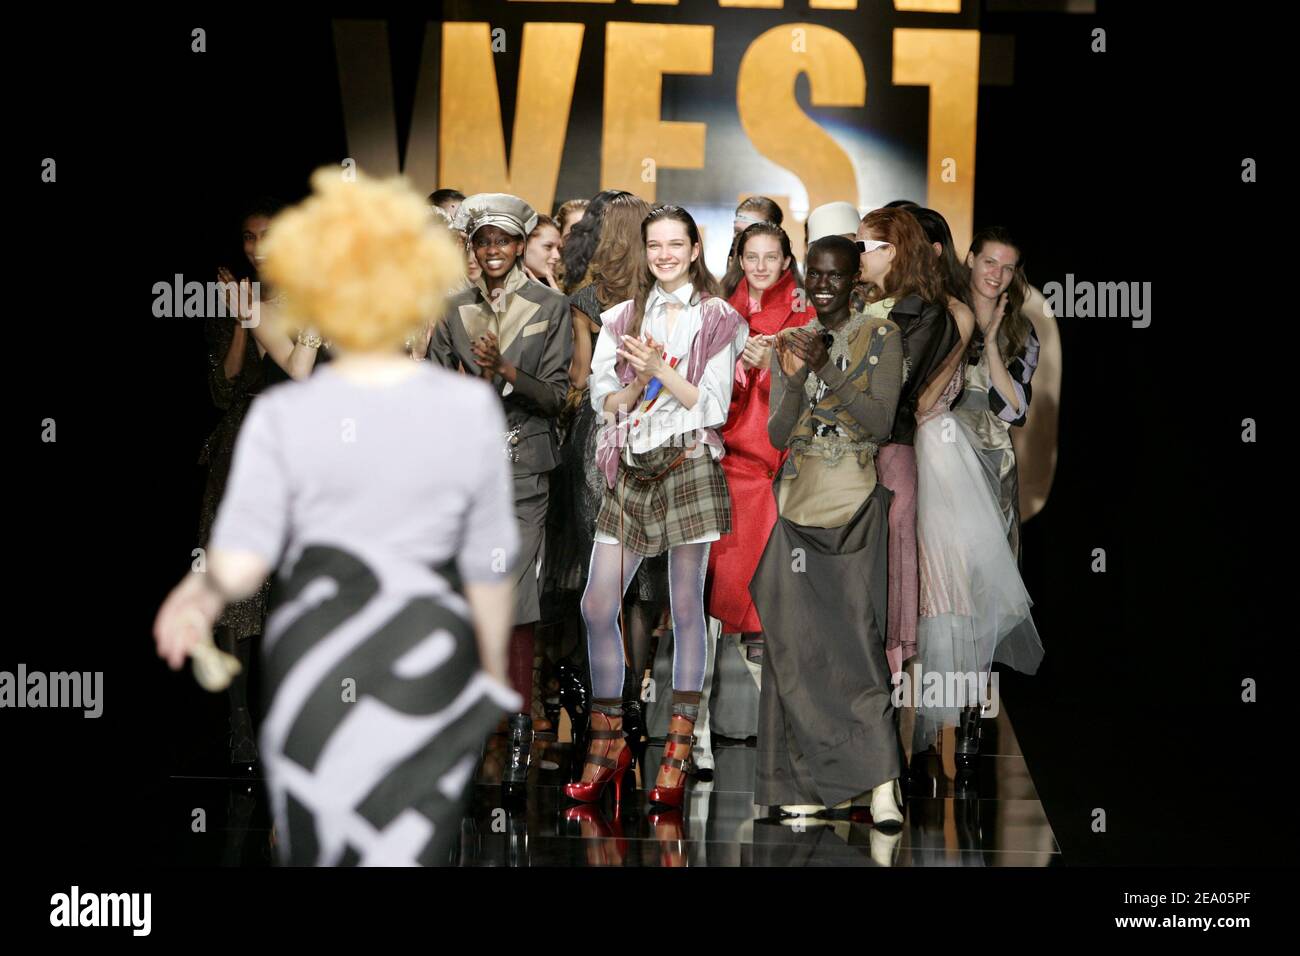 Il designer britannico Vivienne Westwood applaudì ai suoi modelli durante la presentazione della collezione Ready-to-Wear Autunno-Inverno 2005-2006 a Parigi, Francia, il 1 marzo 2005. Foto di Java/ABACA.Ê Foto Stock